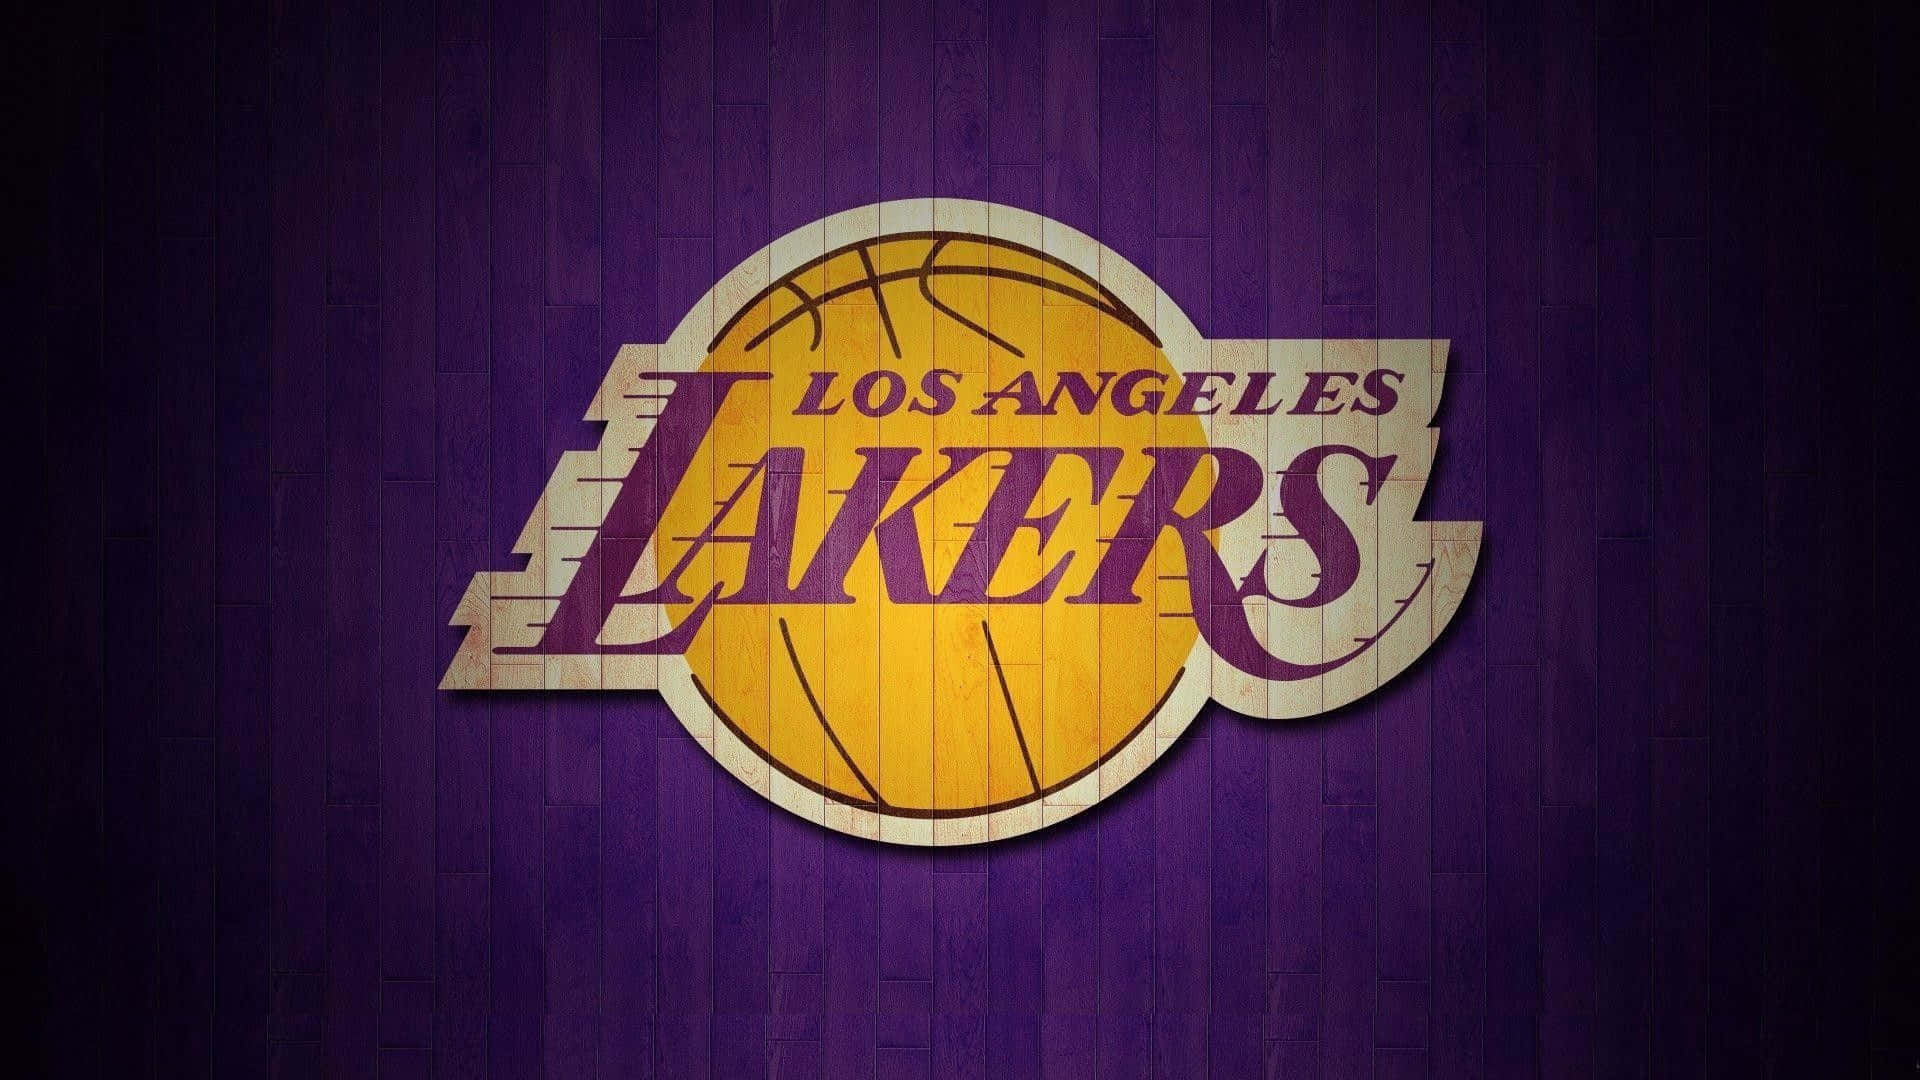 Ilos Angeles Lakers Si Posizionano Al Centro Del Campo.